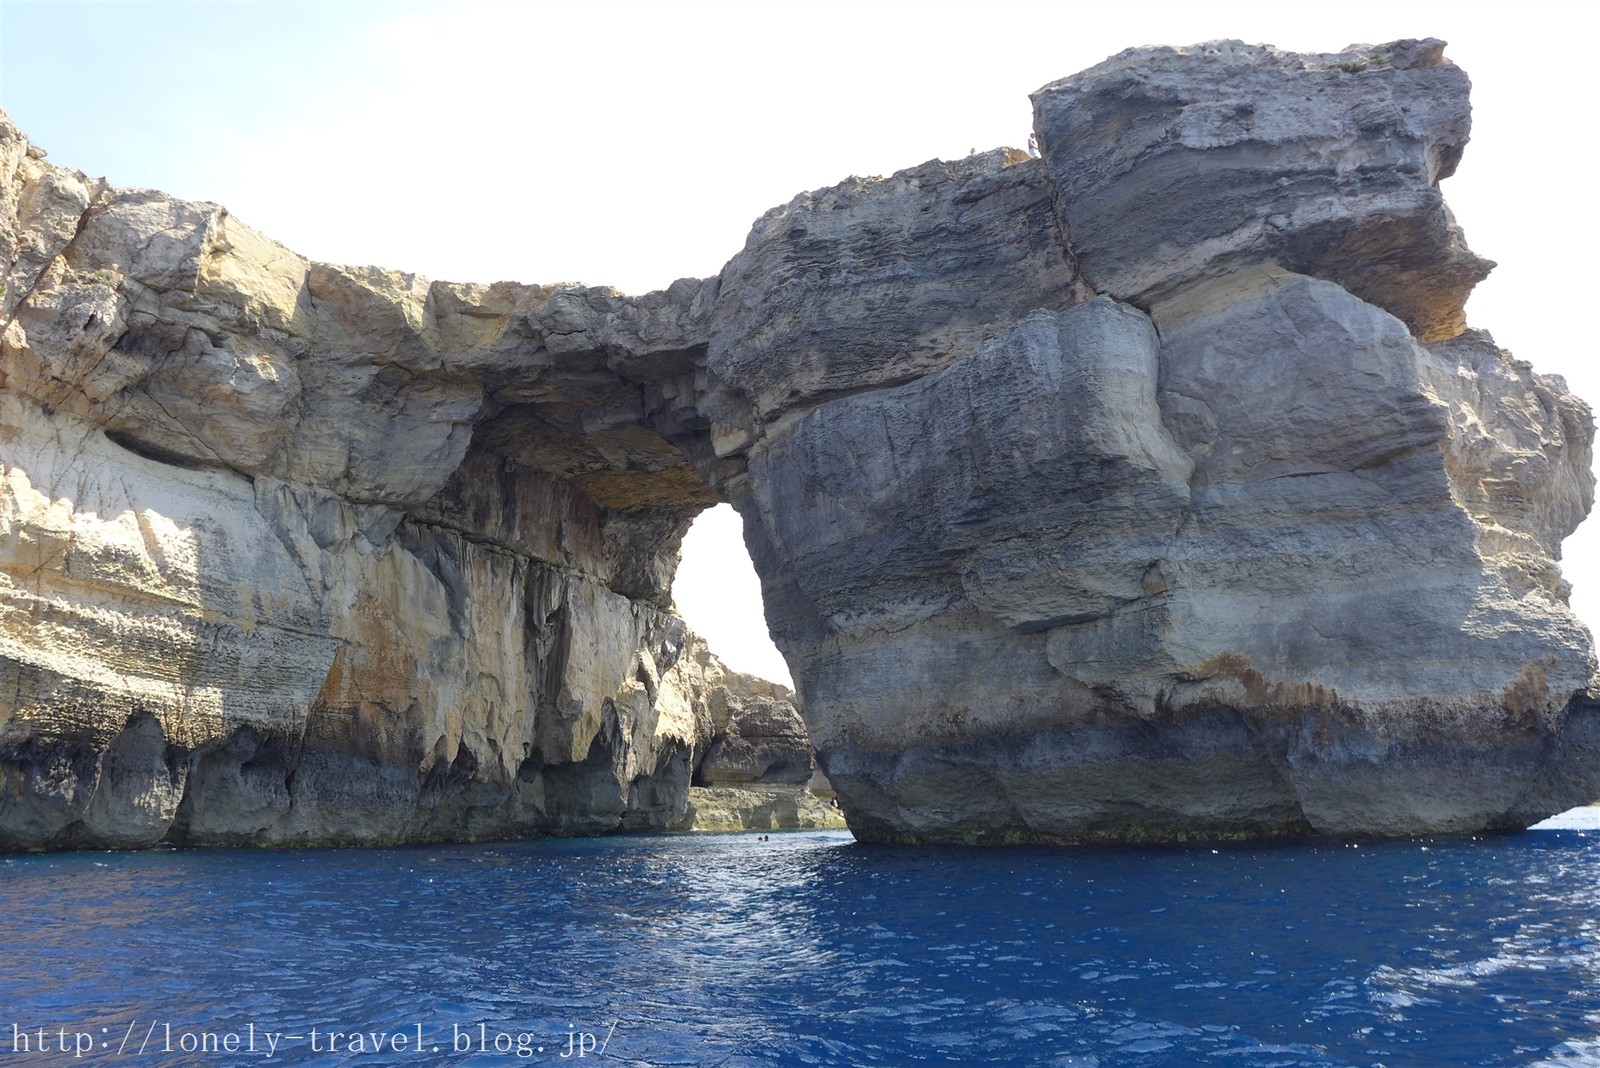 マルタ旅行記36 大自然の奇跡 ゴゾ島で必見のアズール ウィンドウ 青の洞門もあるよ ロンリートラベル 海外個人旅行記